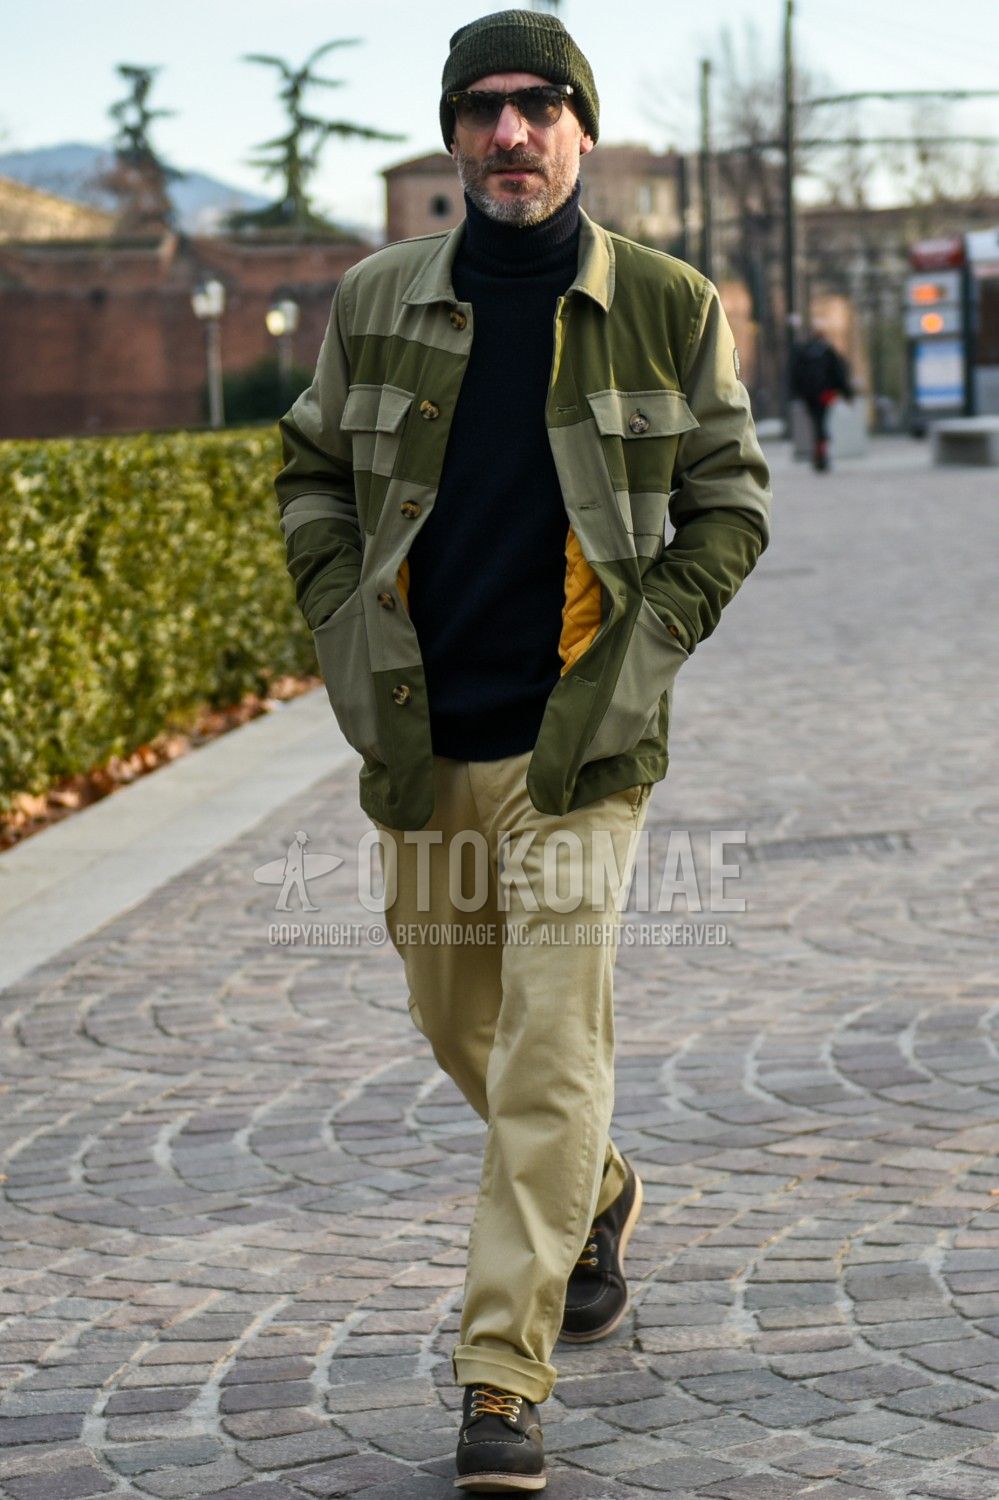 シャツジャケット コーデ メンズ特集 軽やかなレイヤードを表現した注目の着こなし おすすめアイテムを紹介 メンズファッションメディア Otokomae ページ 11otokomae 男前研究所 ページ 11